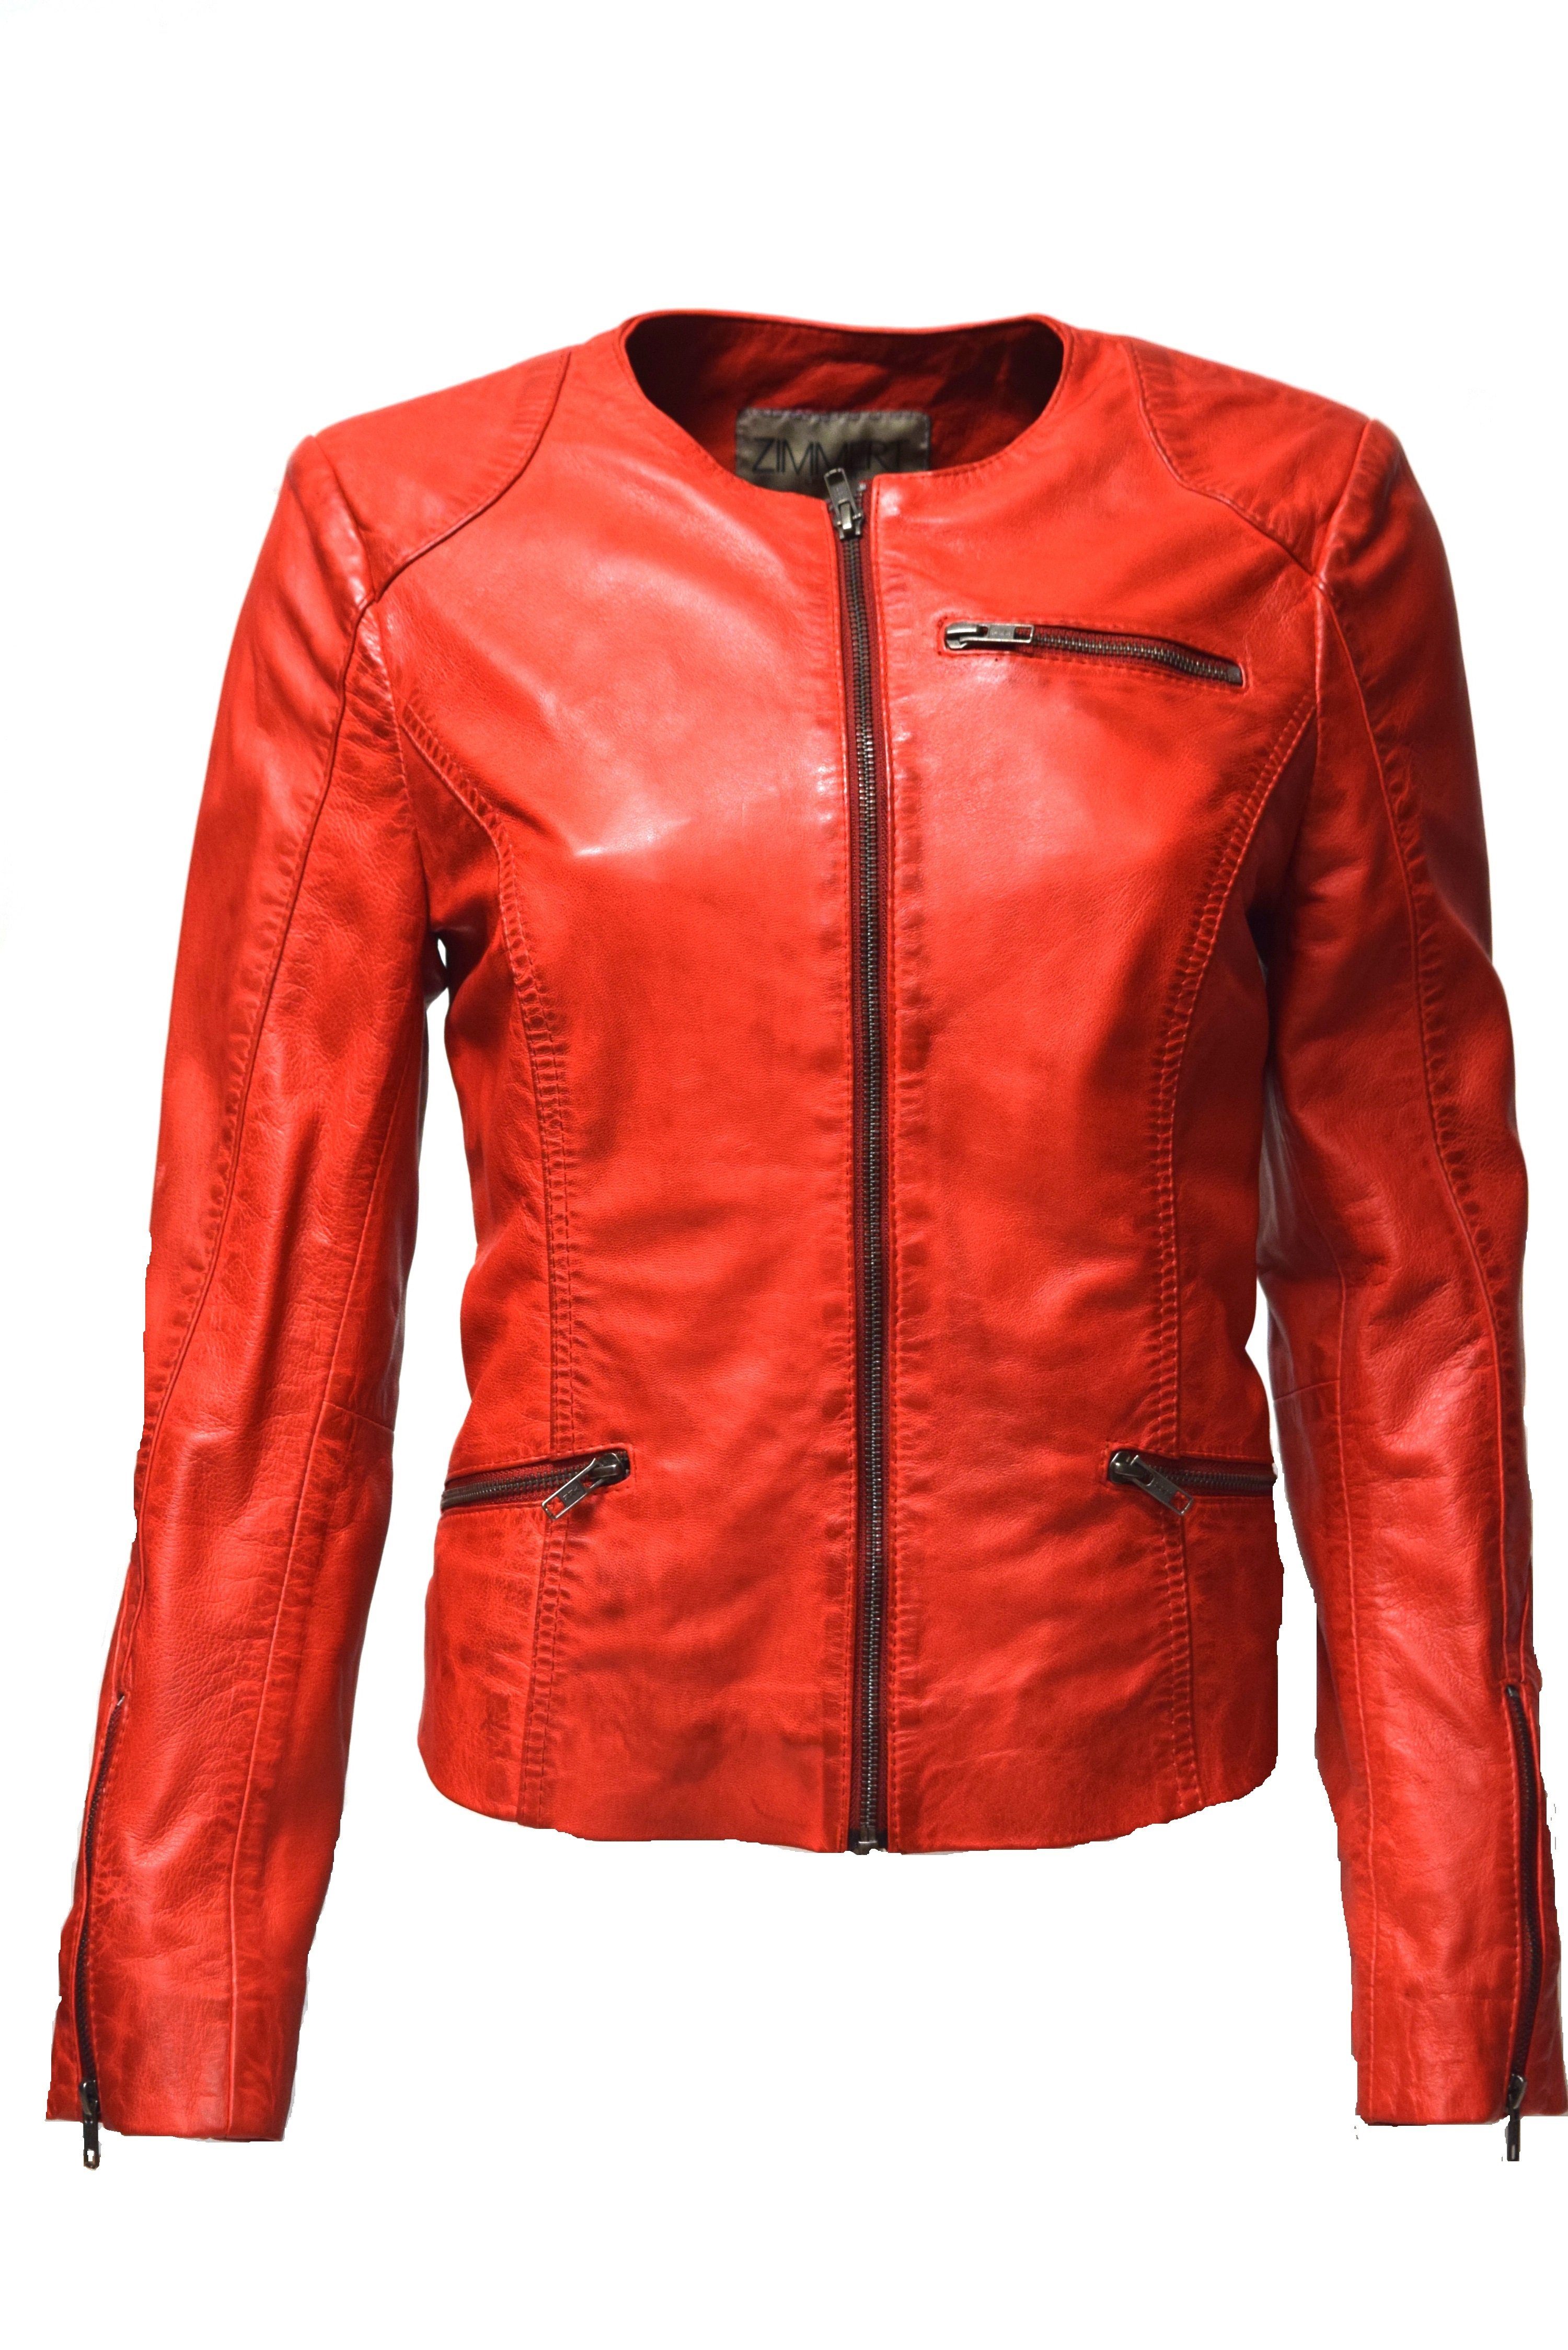 Zimmert Leather Lederjacke Kim Kragenlos, leichtes rot weiches Leder und